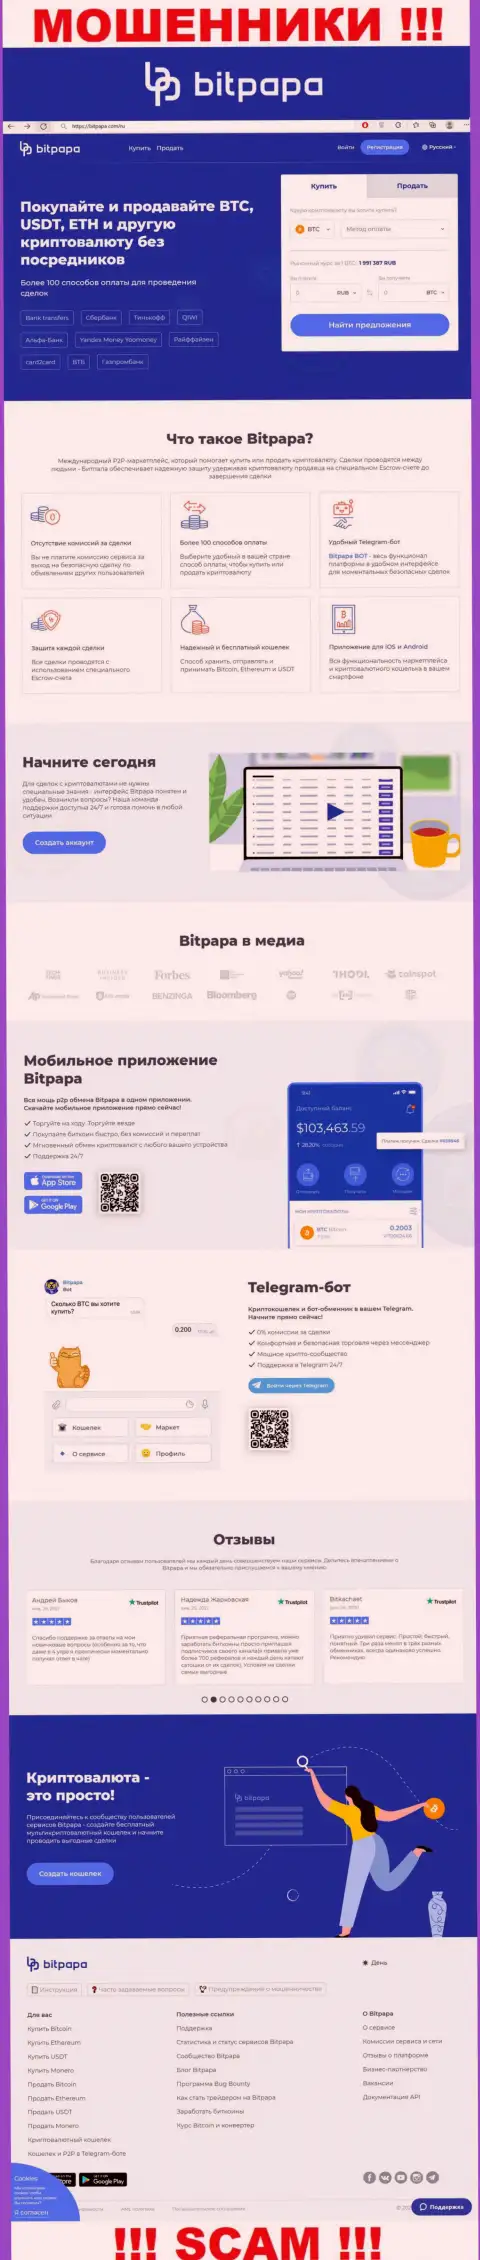 Фейковая информация от BitPapa Com на официальном сайте мошенников